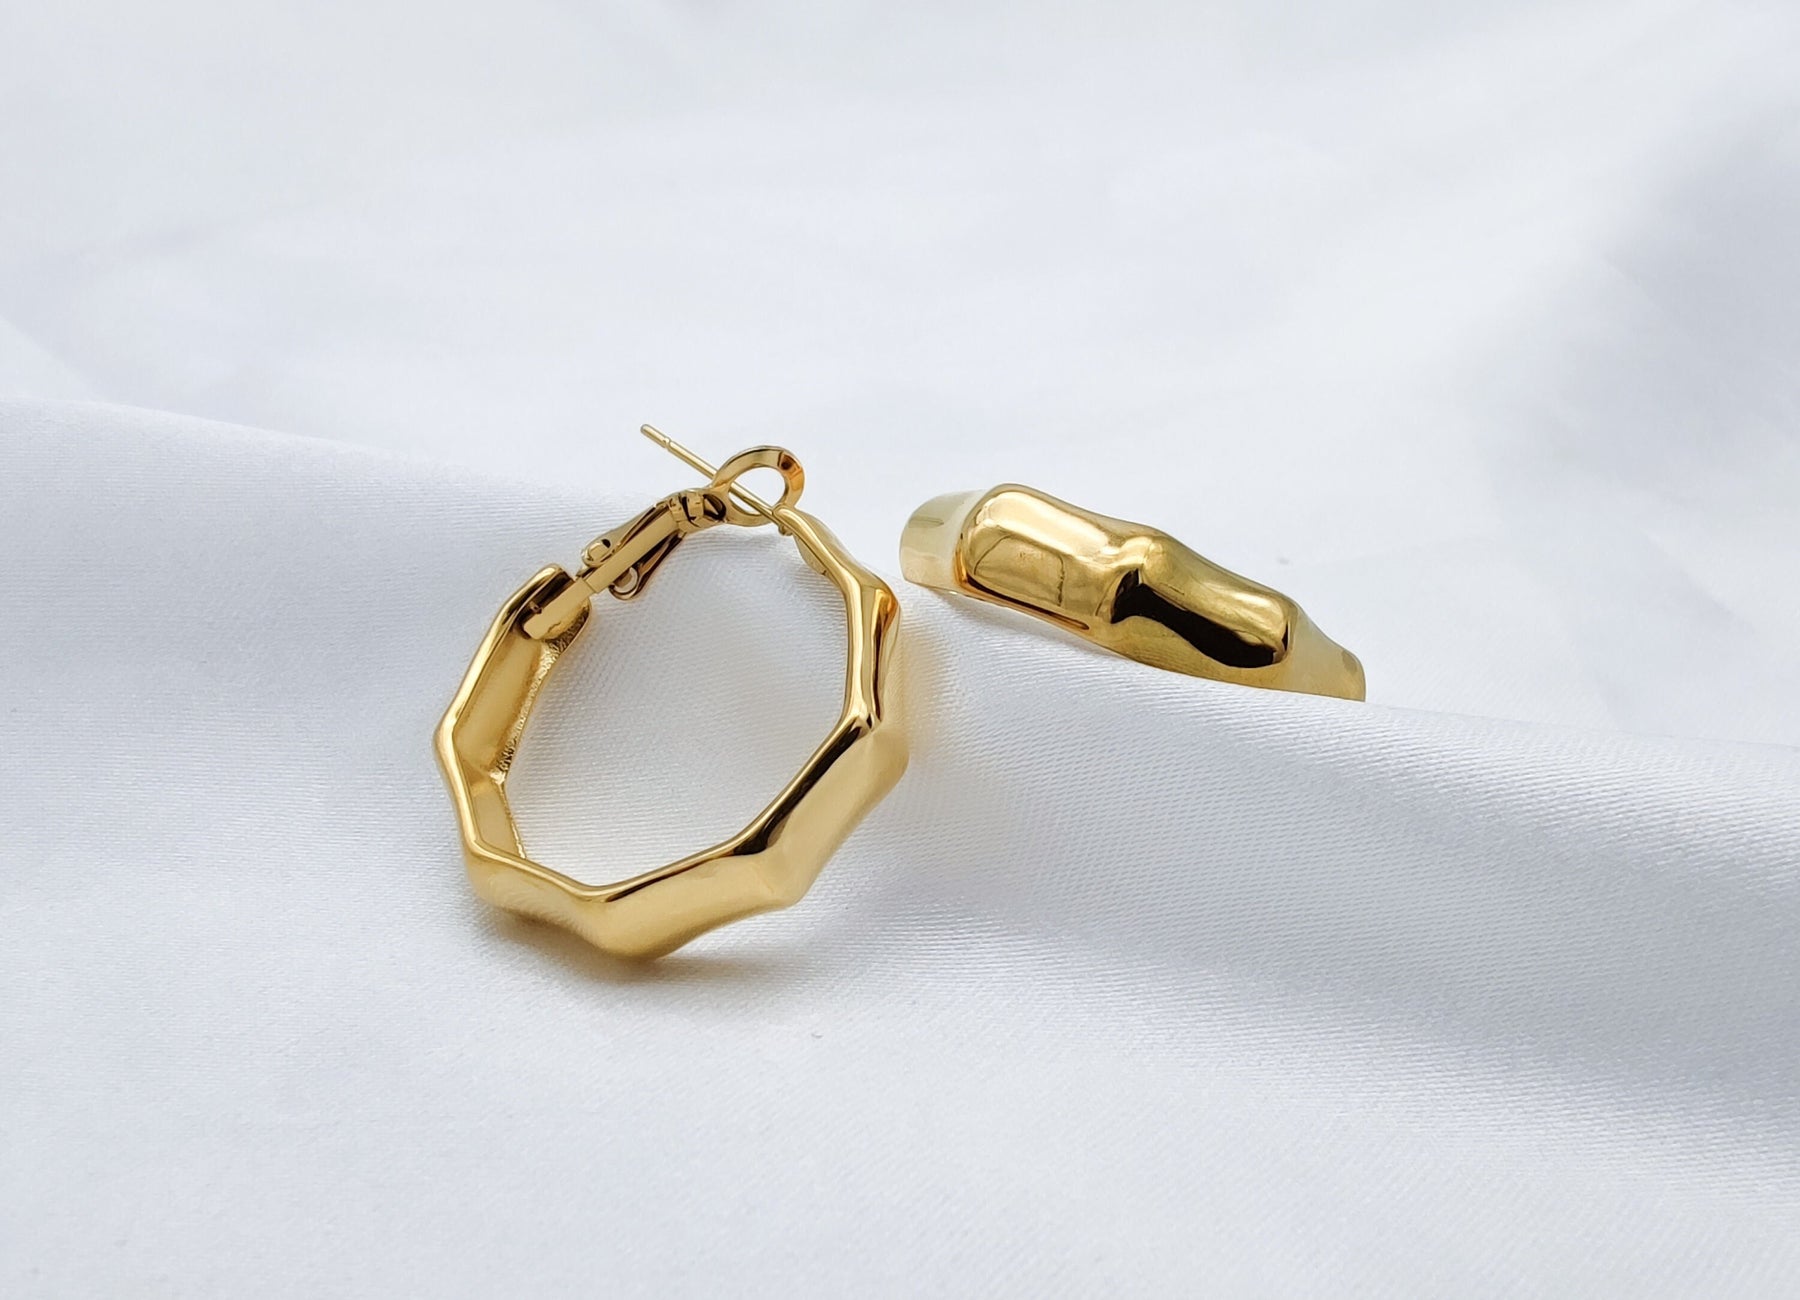 1 Paar Creolen-Edelstahl-vergoldet-Ohrringe gold-edel-elegant-Creolen gold-Ohrstecker gold-Schmucktrend